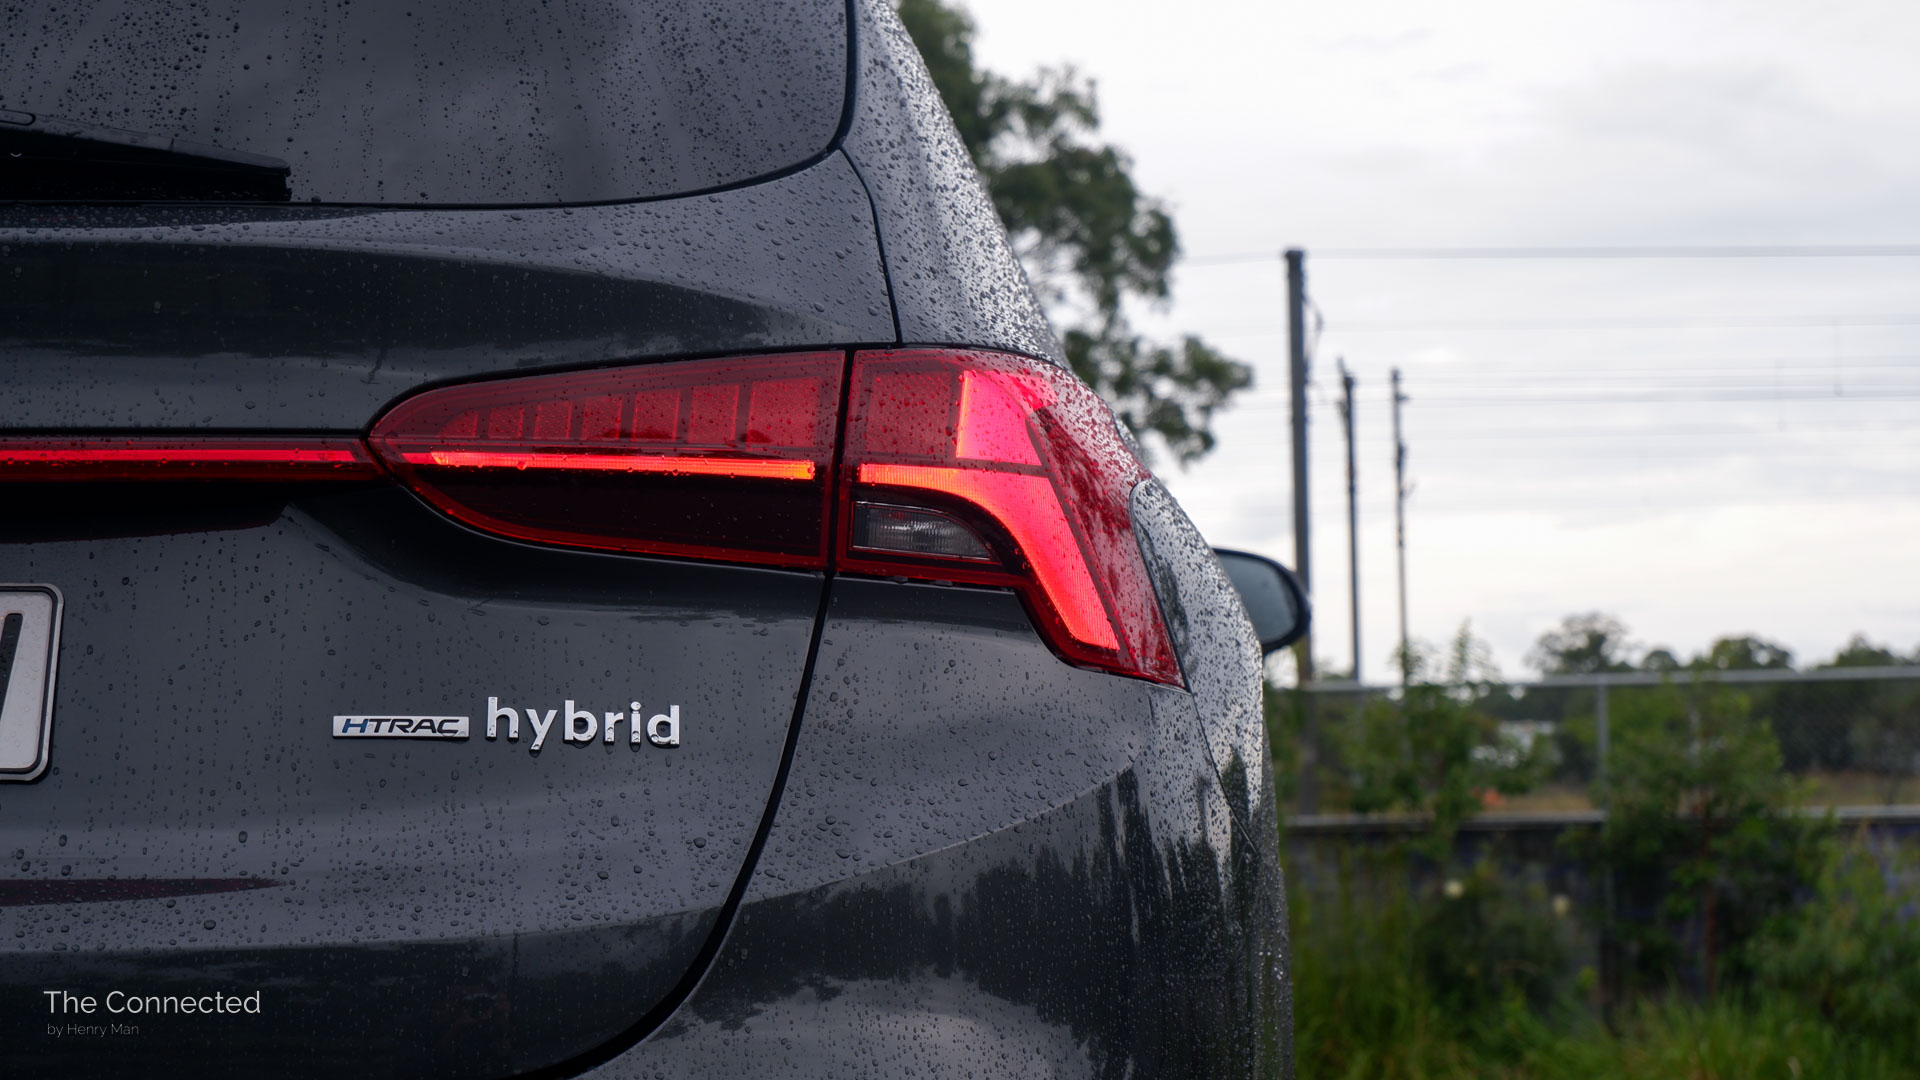 Hyundai Santa Fe Hybrid 'HTRAC hybrid' rear tailgate badge and LED tail-light